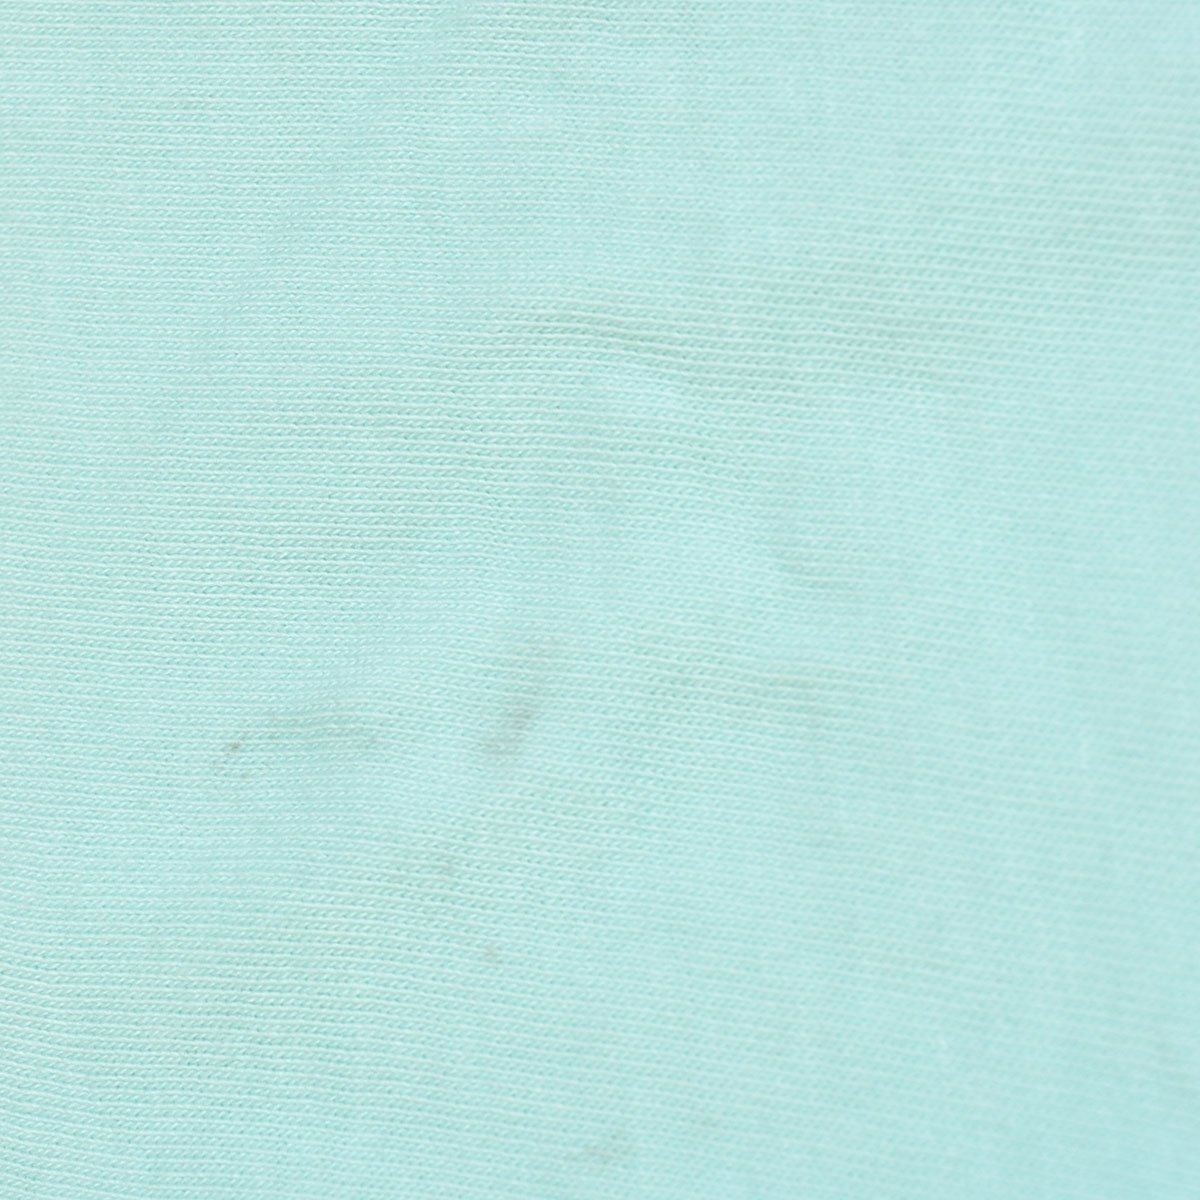 〇385930 SOL ANGELES ソルエンジェルス ○Vネック 半袖 Tシャツ サイズS 綿100% メンズ USA製 ブルー プリント_画像6